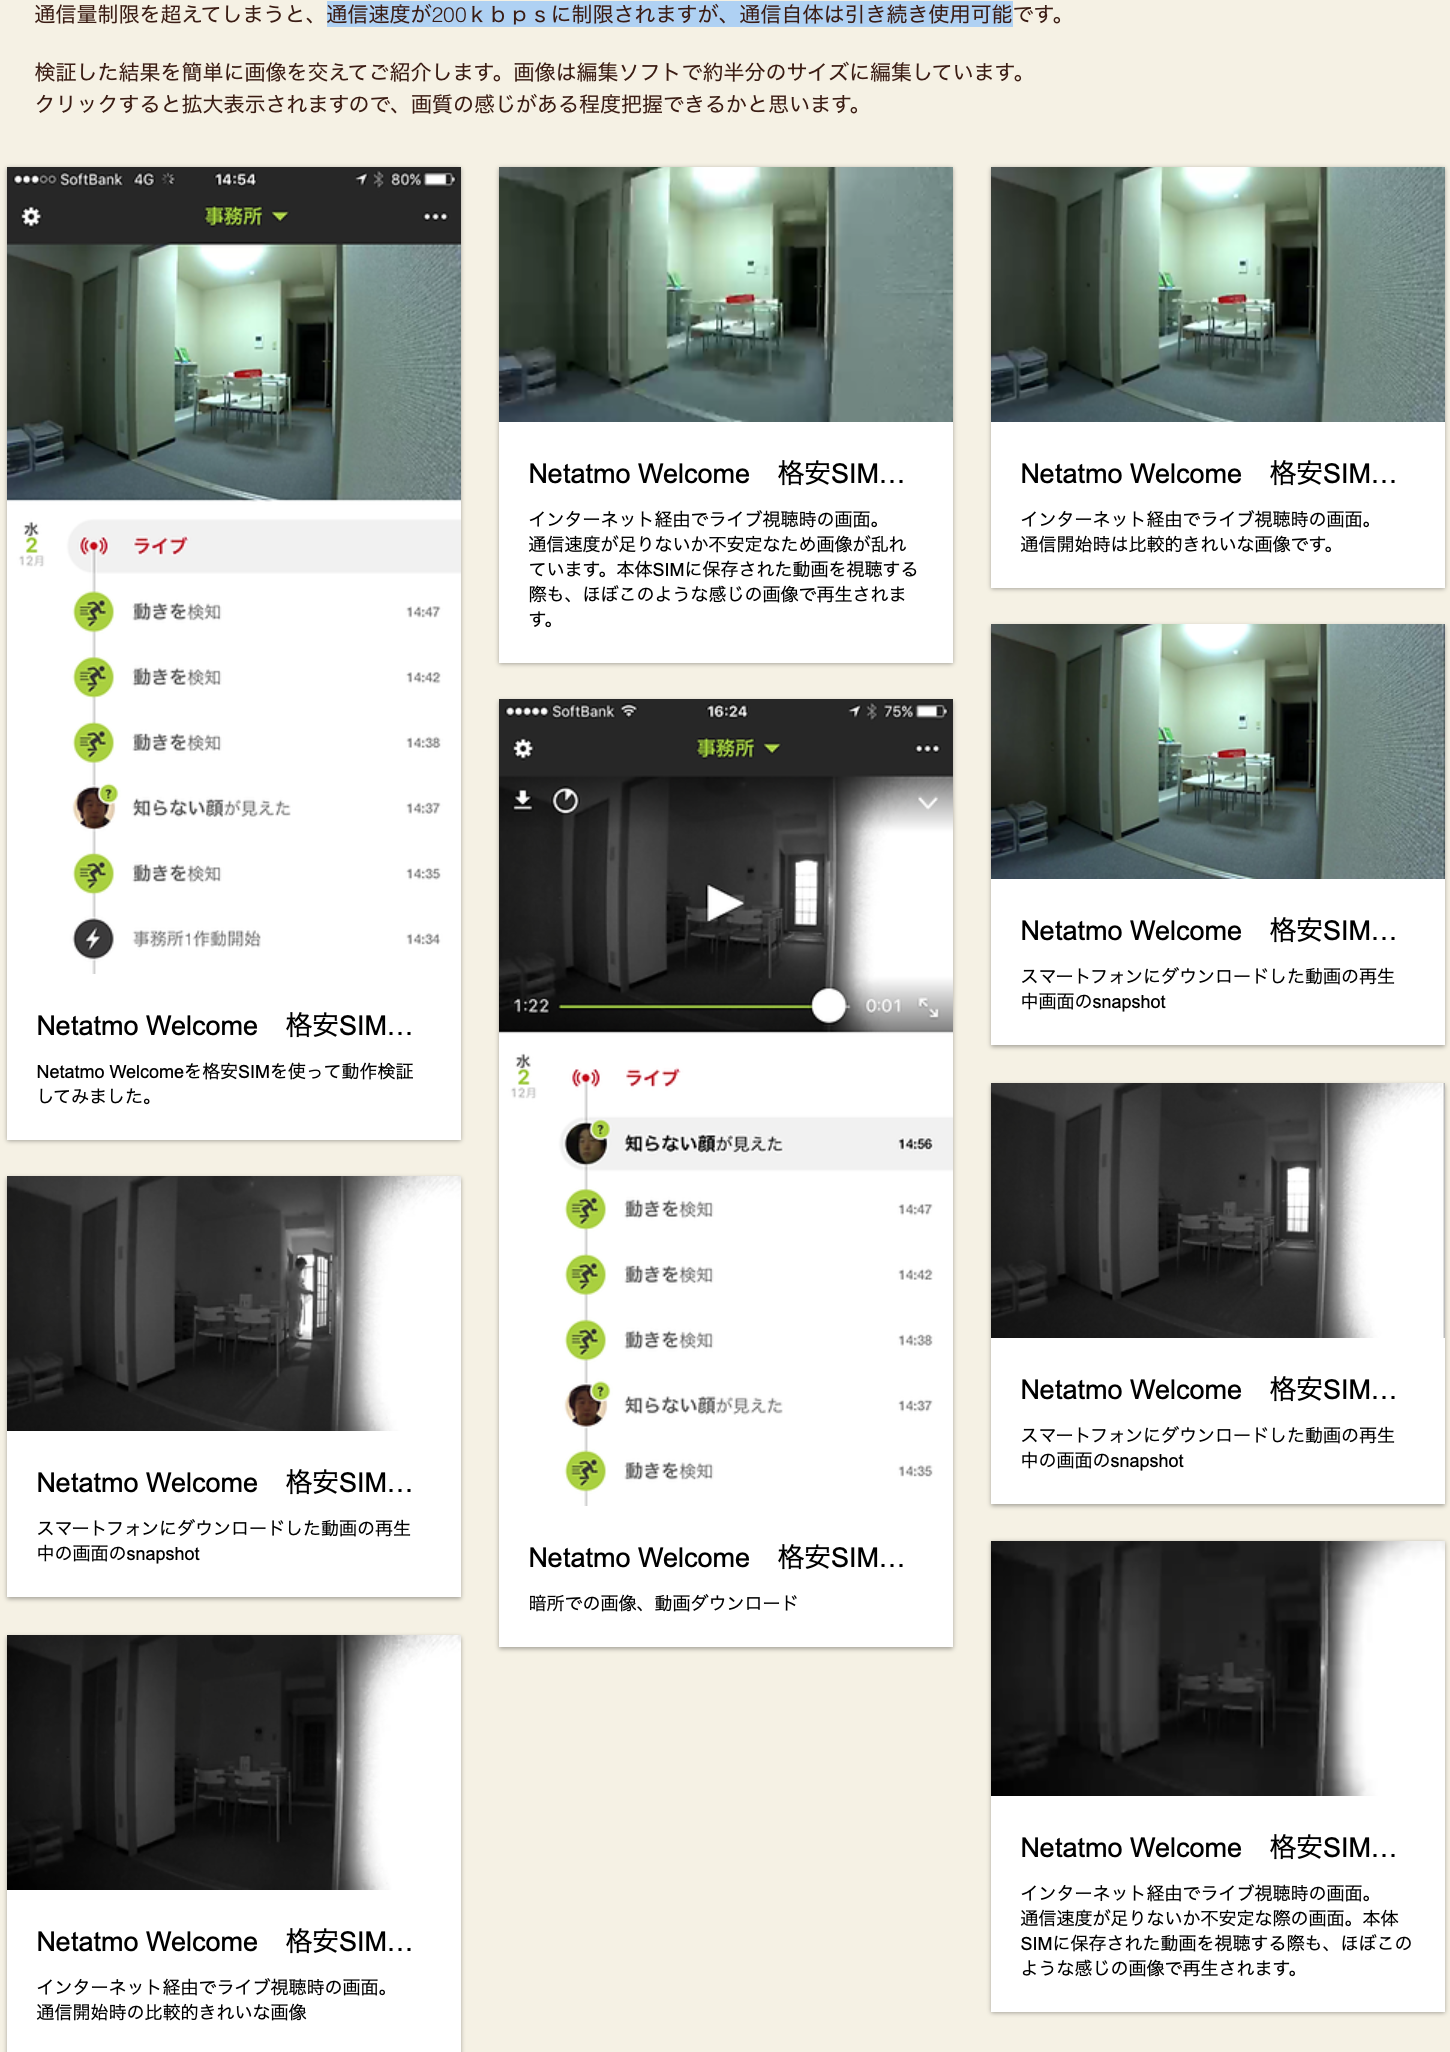 【必見】LINEMOは月額990円のミニプランでも防犯カメラとして利用できる格安SIM kansikamera-kakuyasusim